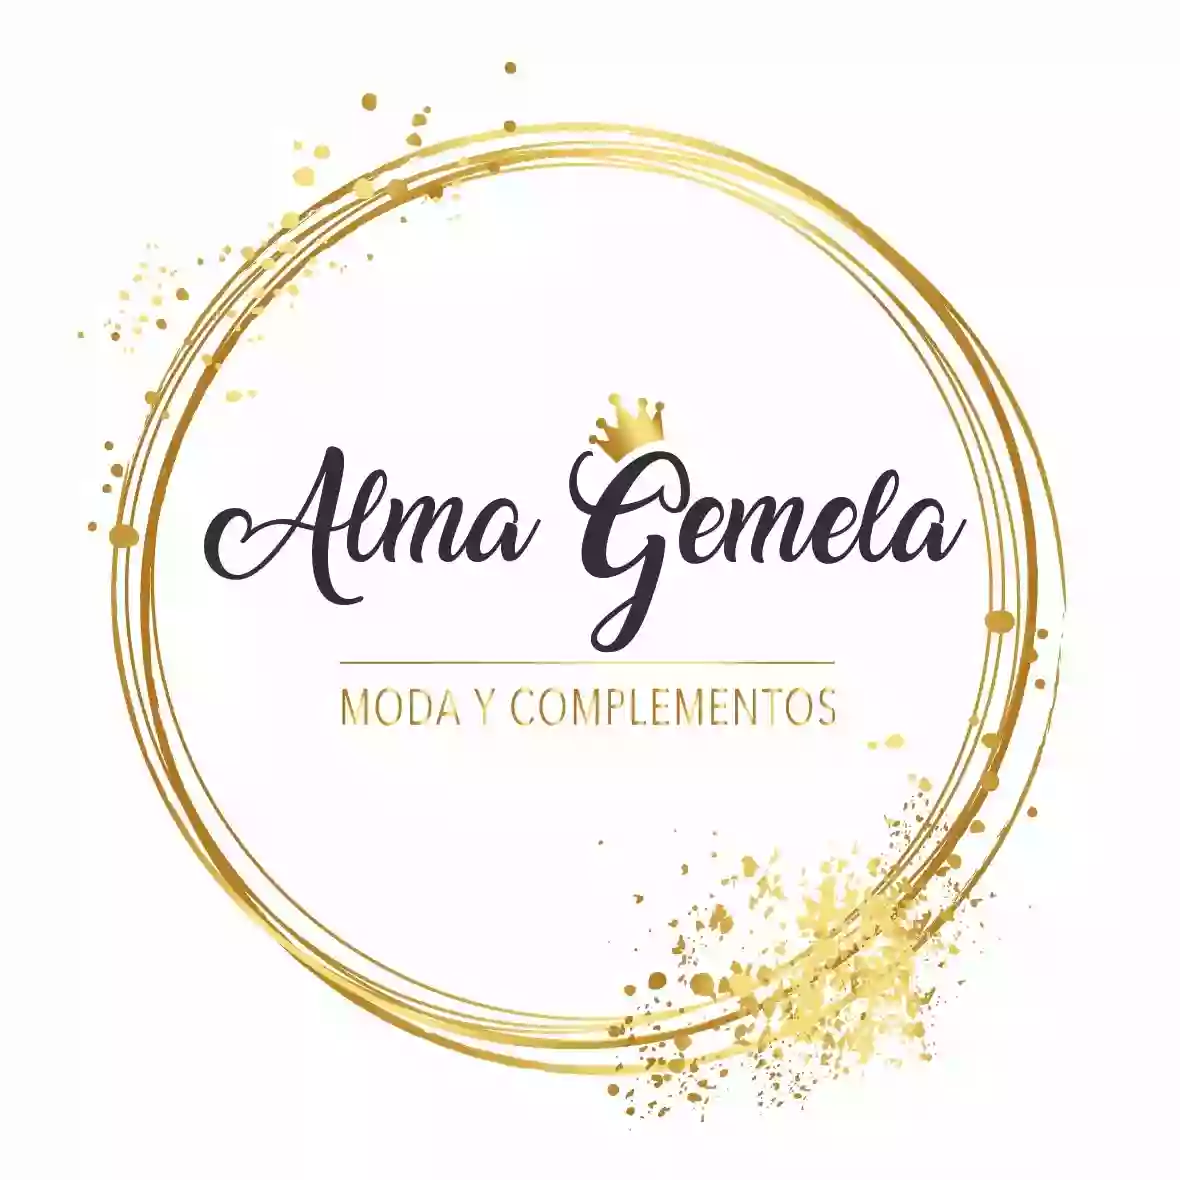 Alma Gemela Shop moda y complementos